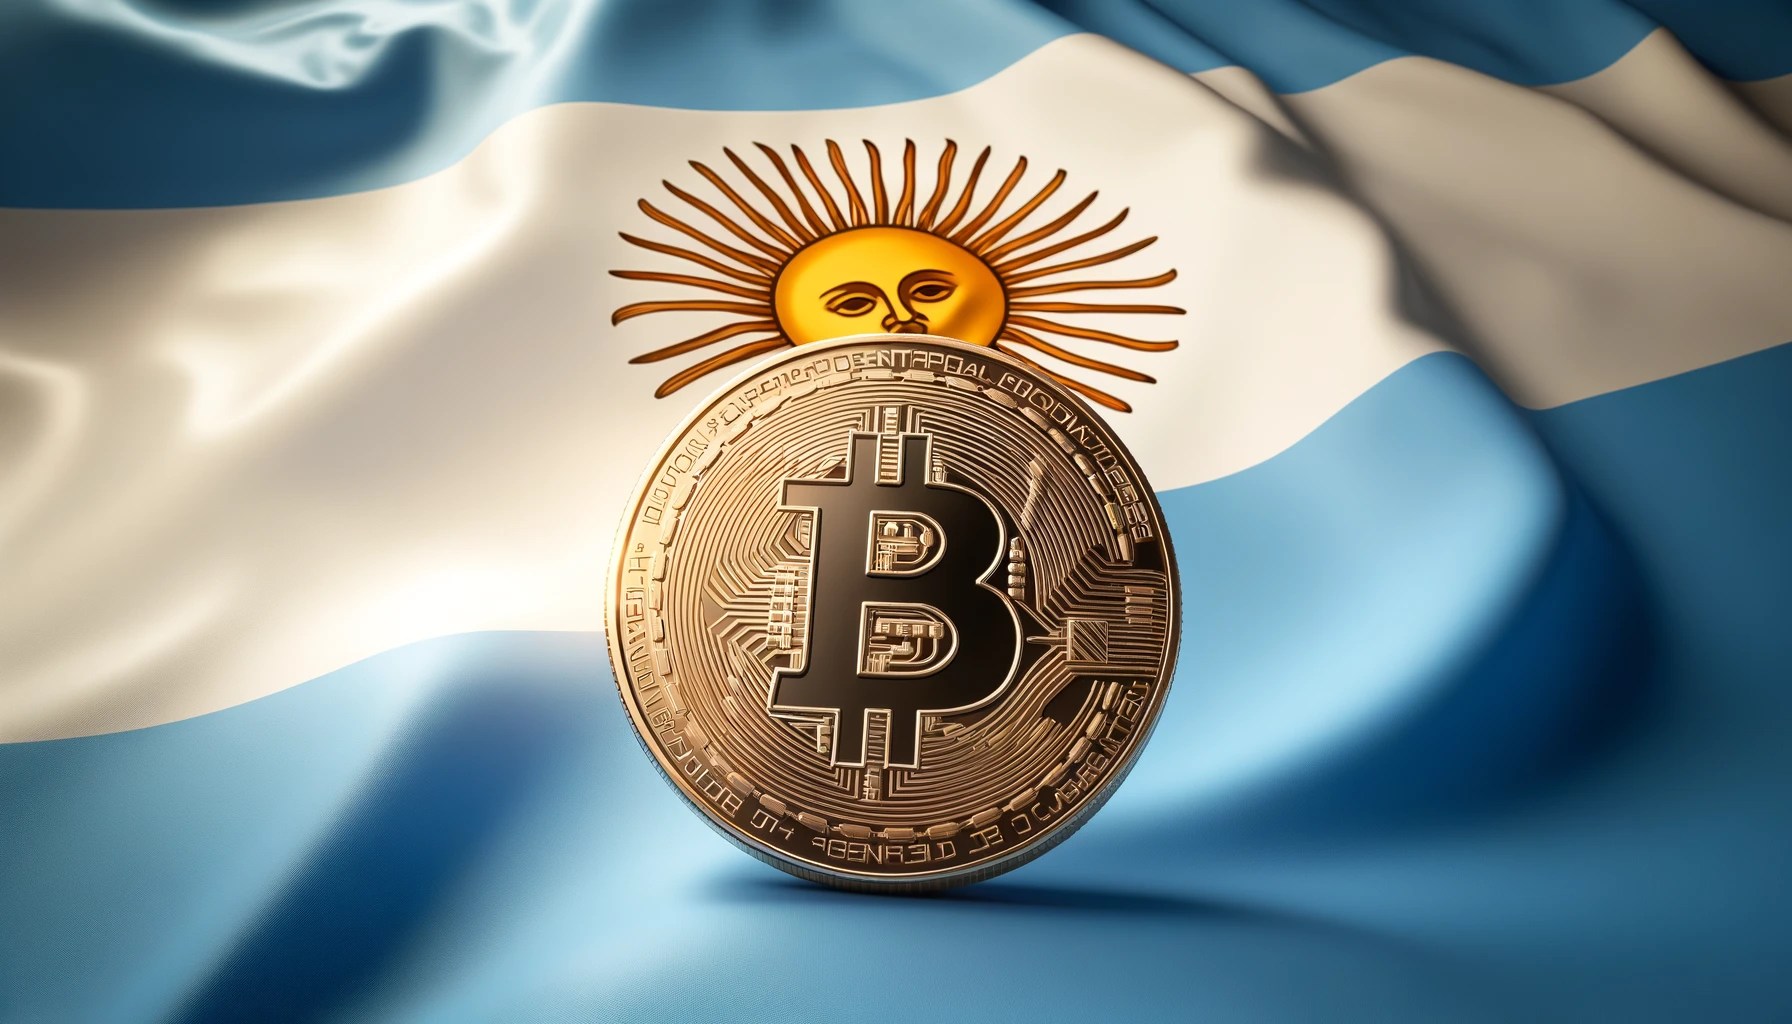 Genesis Digital Assets arbeitet mit YPF Luz zusammen, um eine umweltfreundliche Bitcoin-Mining-Anlage in Argentinien zu bauen